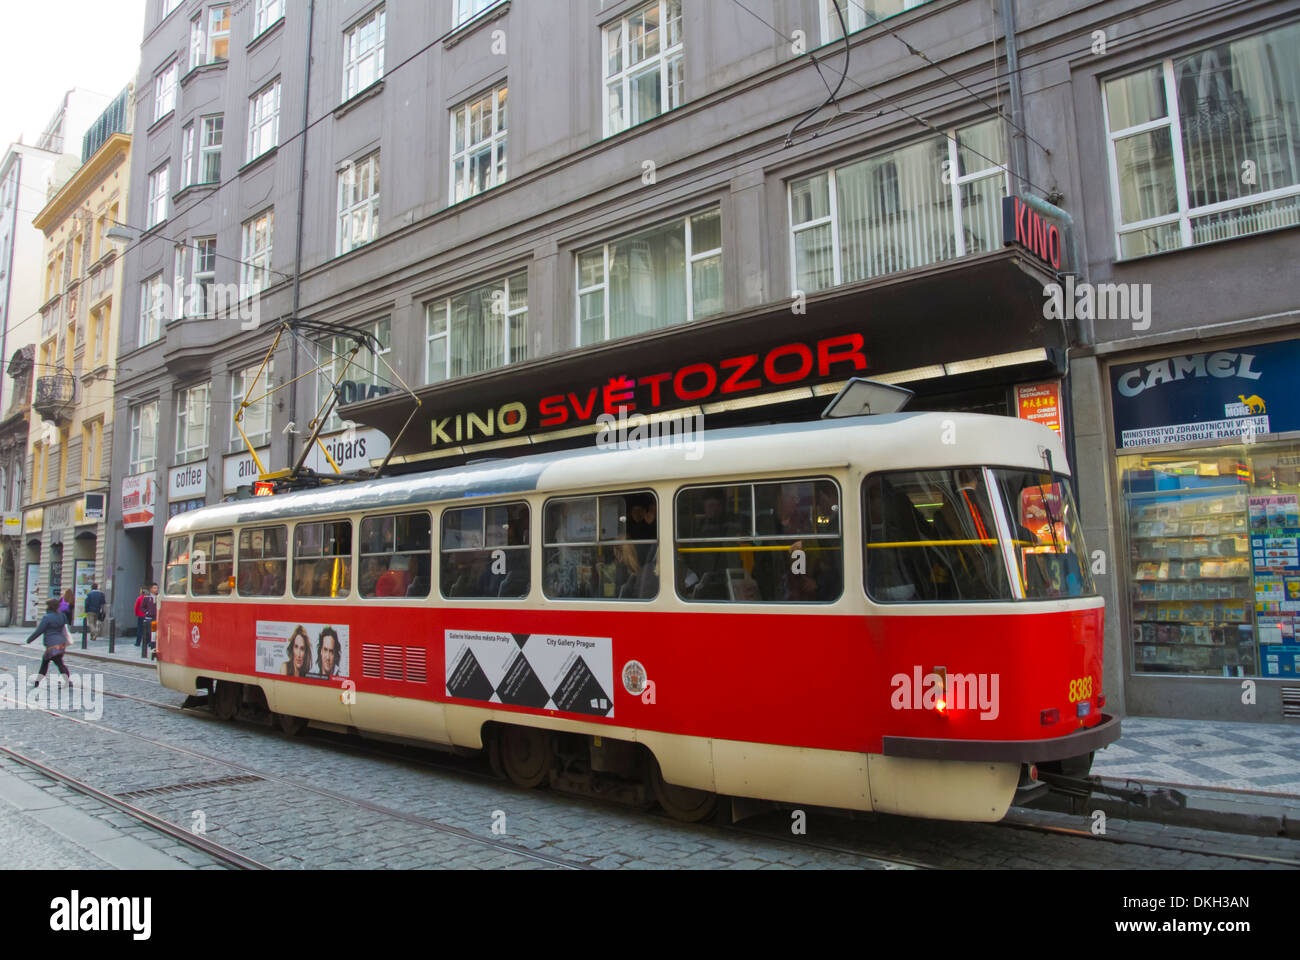 Vaclavske namesti fermata del tram sulla strada Vodickova Praga Città Regione Bohemia Repubblica Ceca Europa Foto Stock